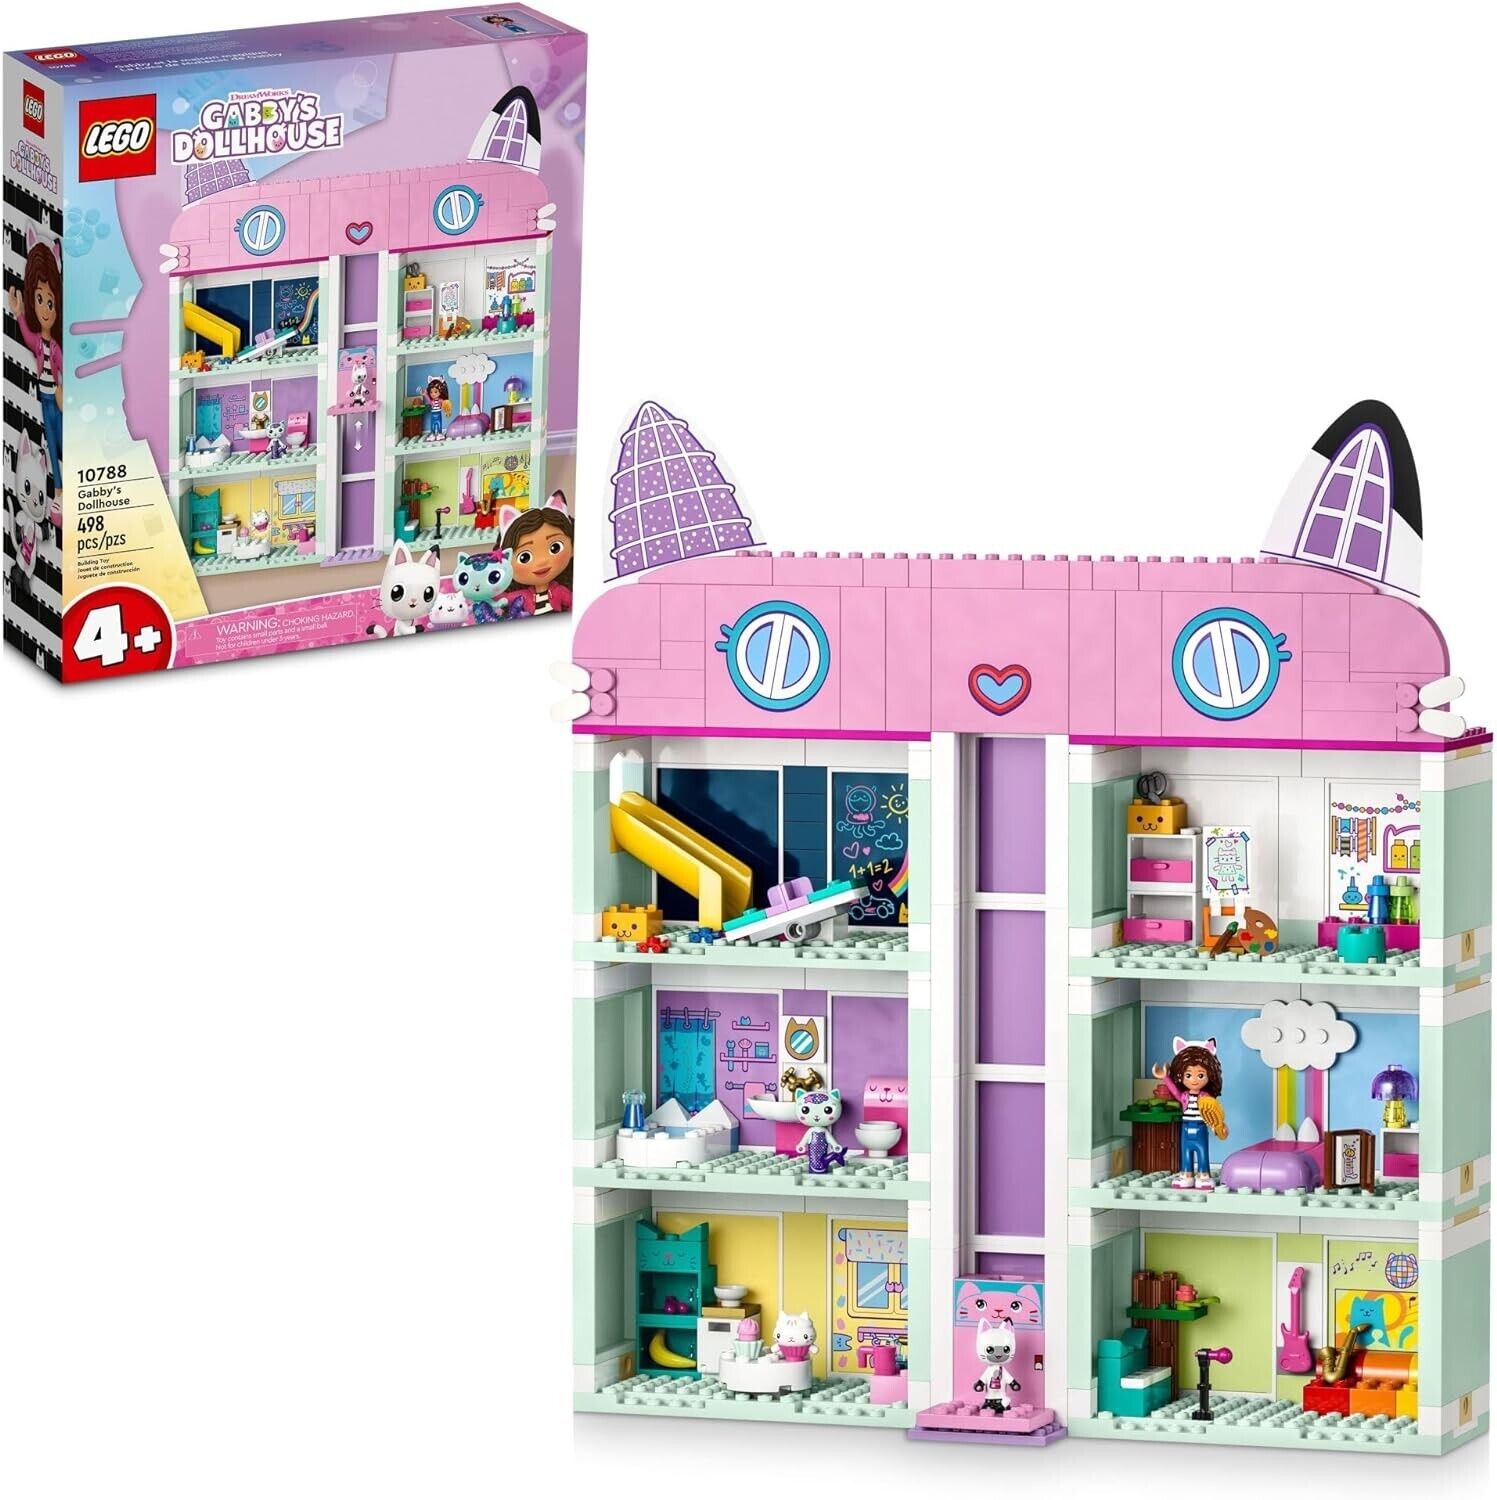 LEGO GABBY’S DOLLHOUSE: Gabby's Dollhouse (10788)